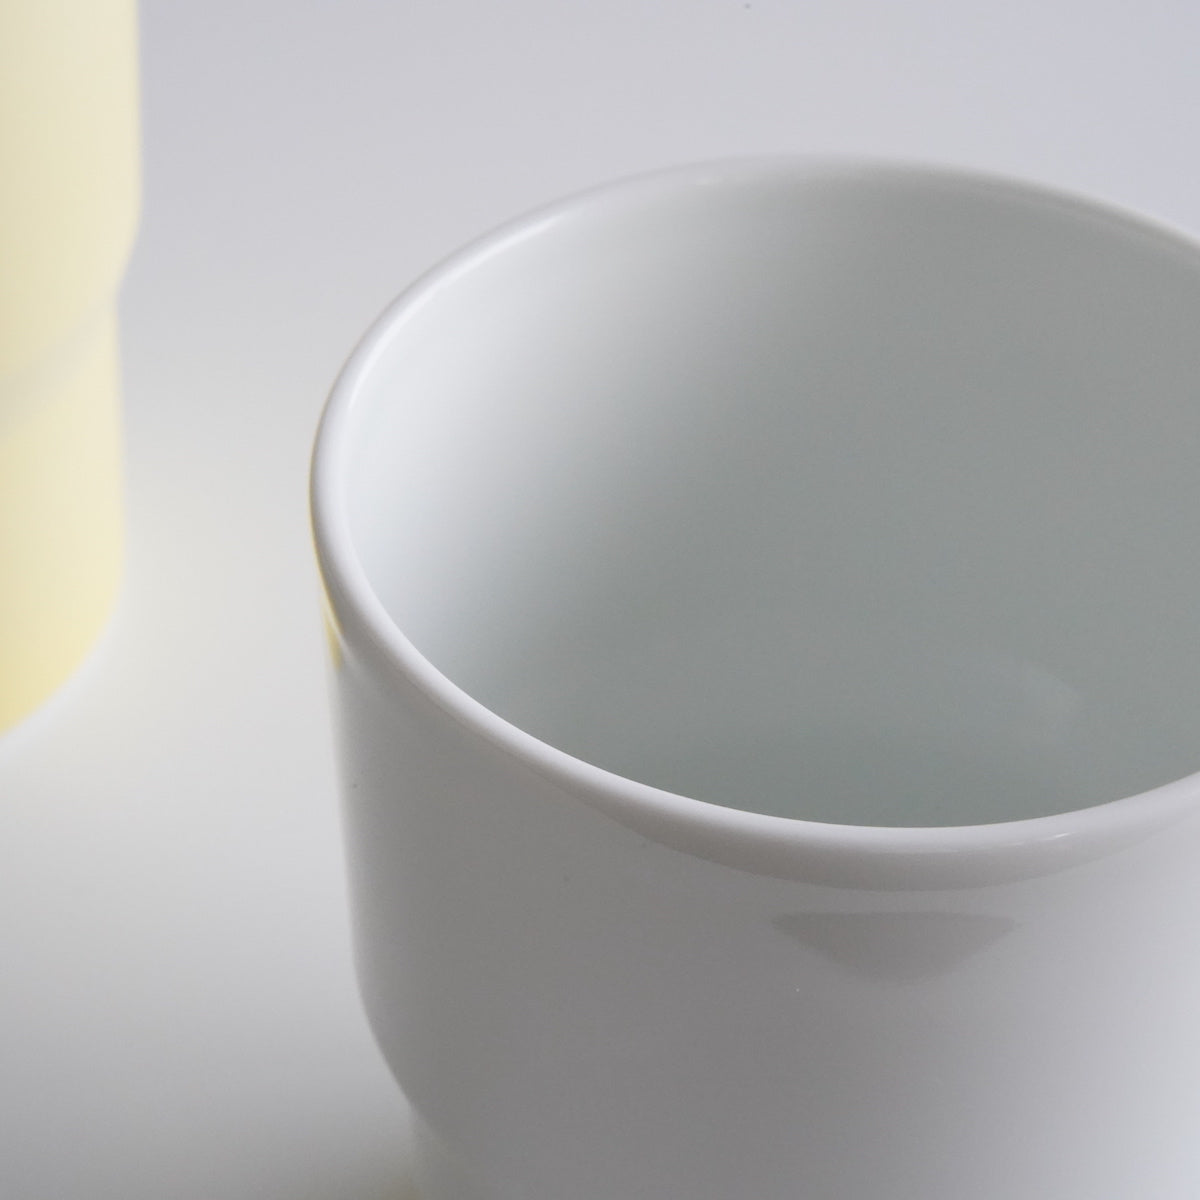 1616 / arita japan S&B "Colour Porcelain" Mug White detail